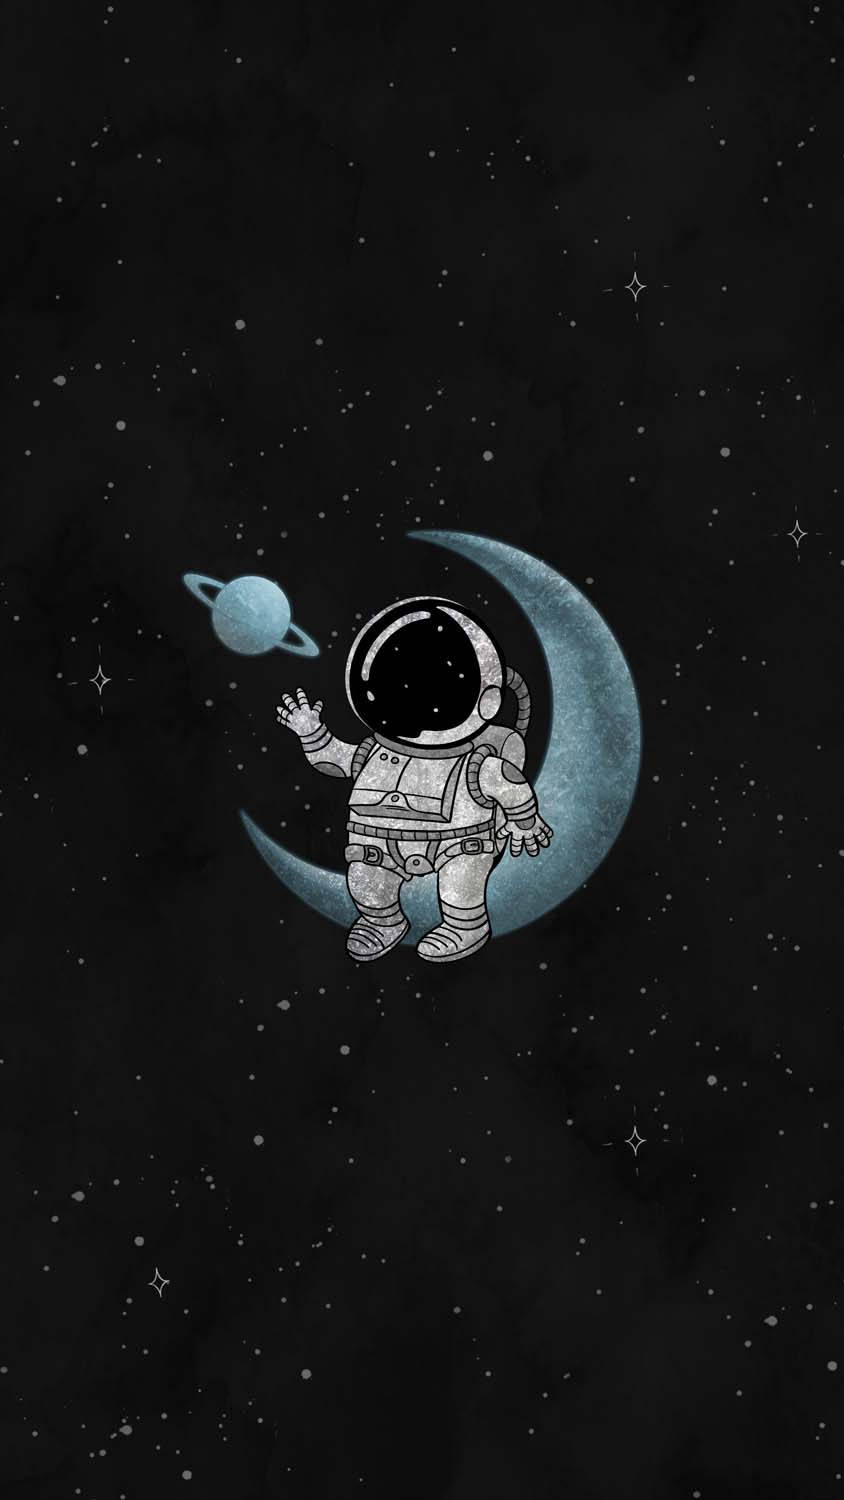 Cartoon Astronaut Sitting On The Moon Wallpaper